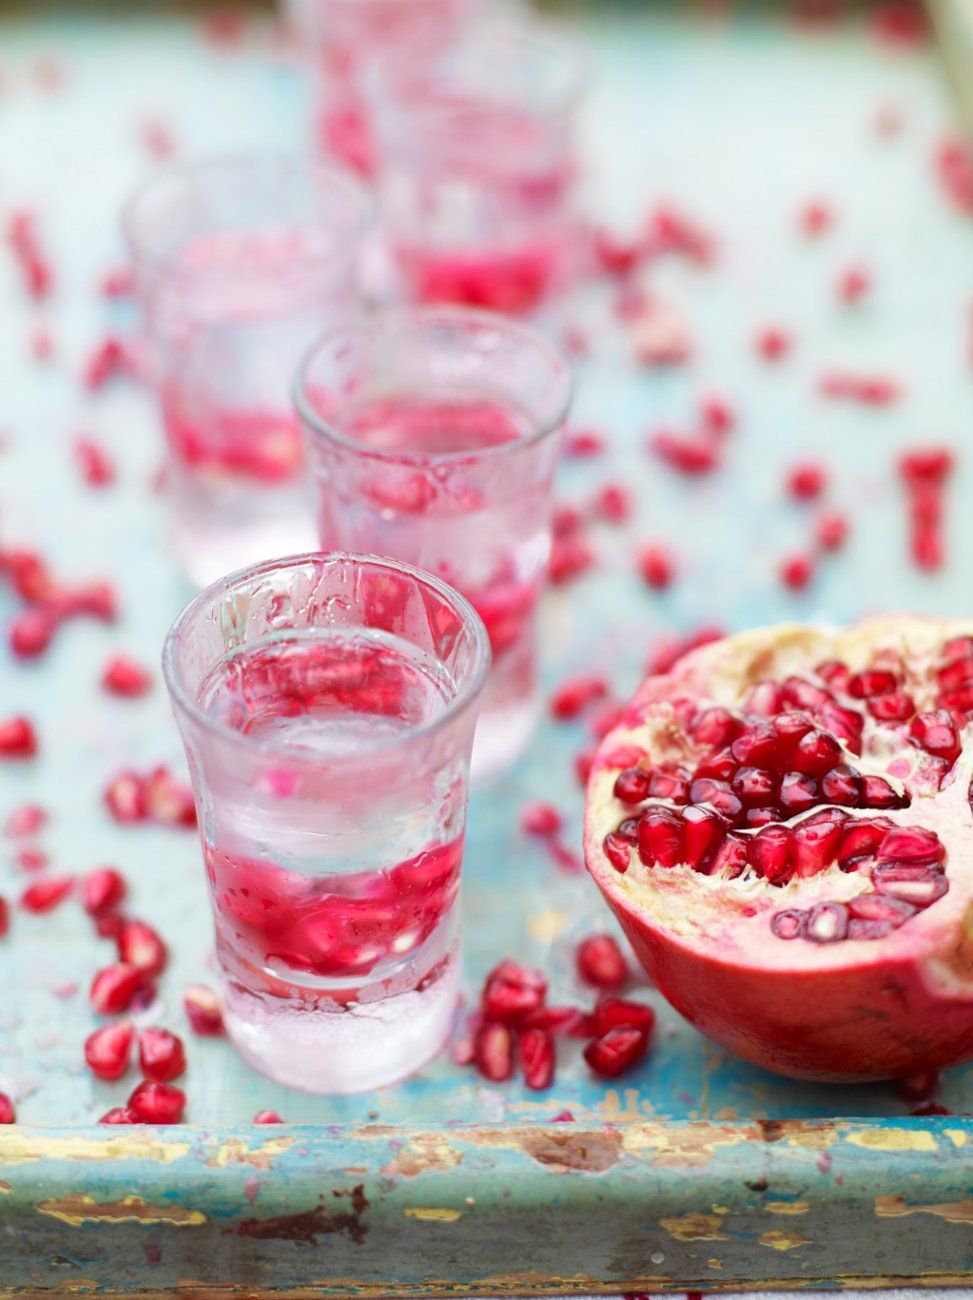 Pomegranate shots